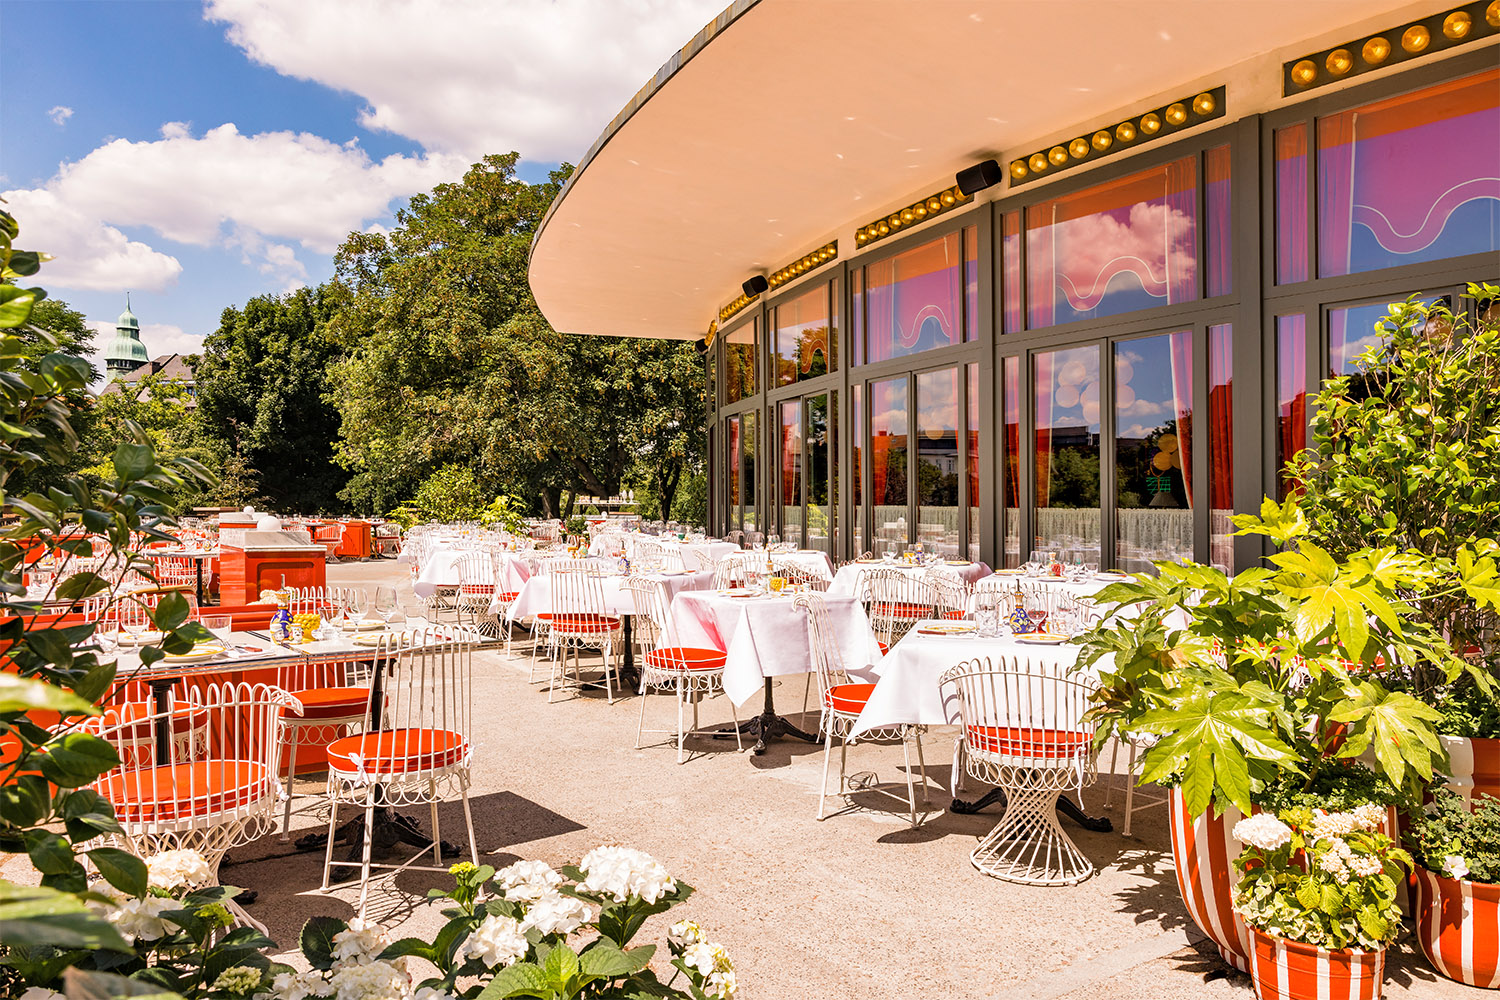 Gartenrestaurants in Berlin Im grünen Weinbergspark wird beim neuen Szene-Italiener Coccodrillo fein gegessen.